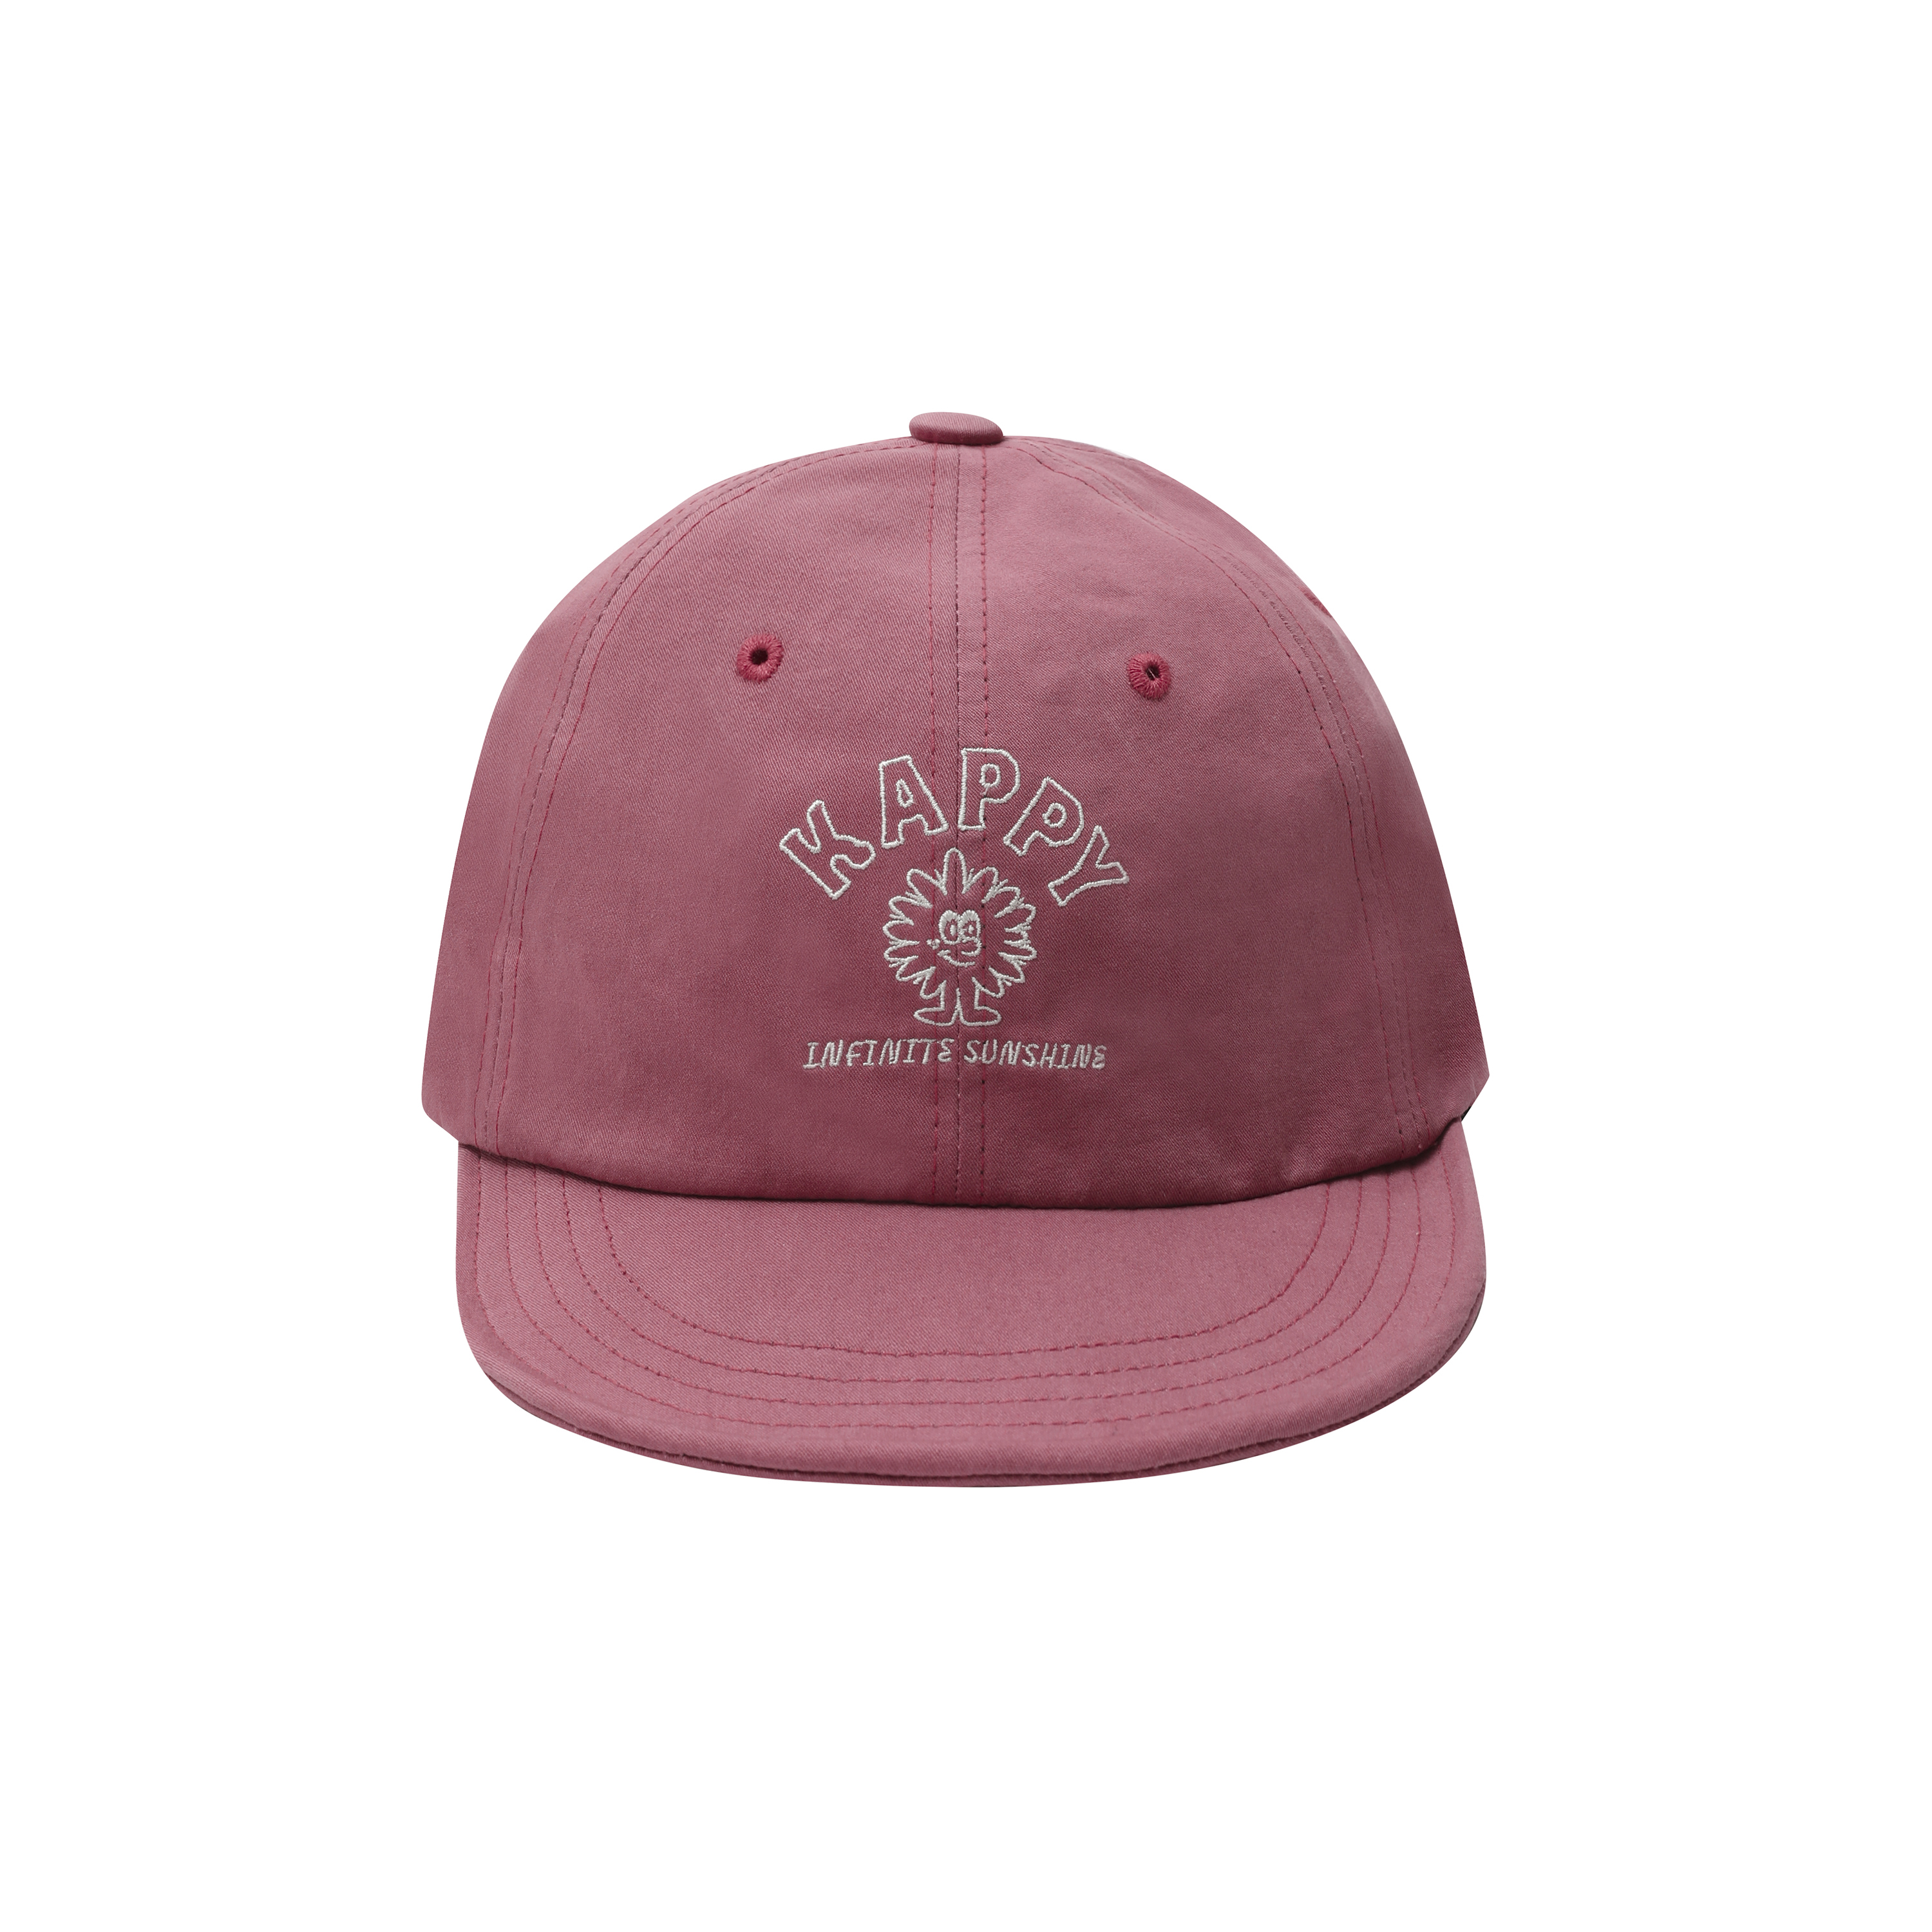 [5.30 예약출고] Kappy sunshine cap pink